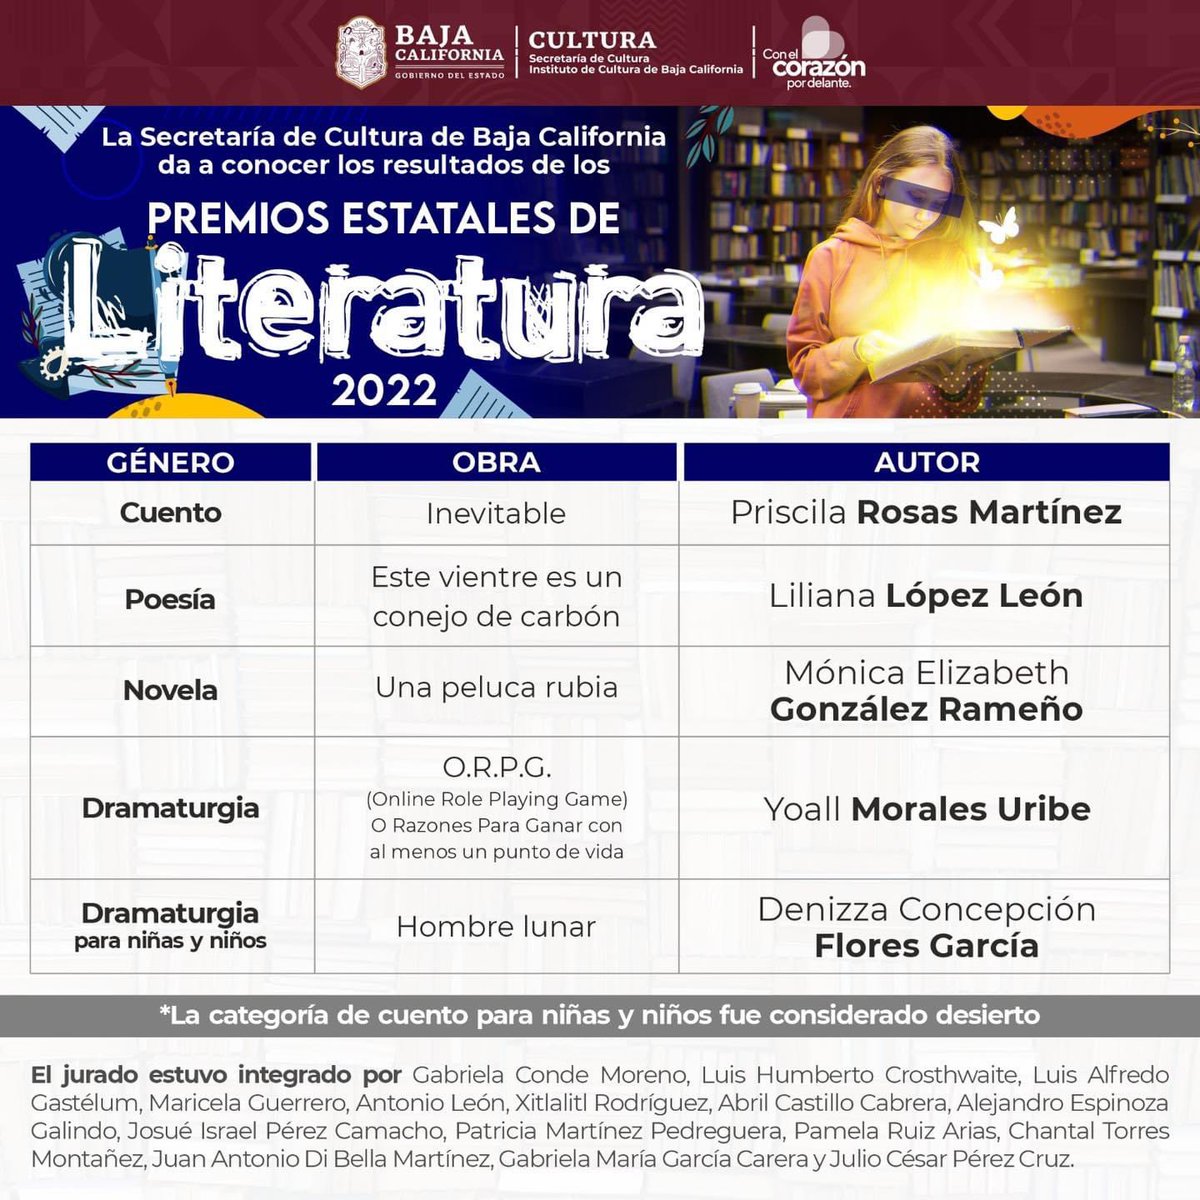 Conoce la lista de los ganadores de los Premios Estatales de Literatura 2022. 📚
¡Muchas felicidades!

#CulturaBC #PEL2022 #Literatura #FomentoalaLectura